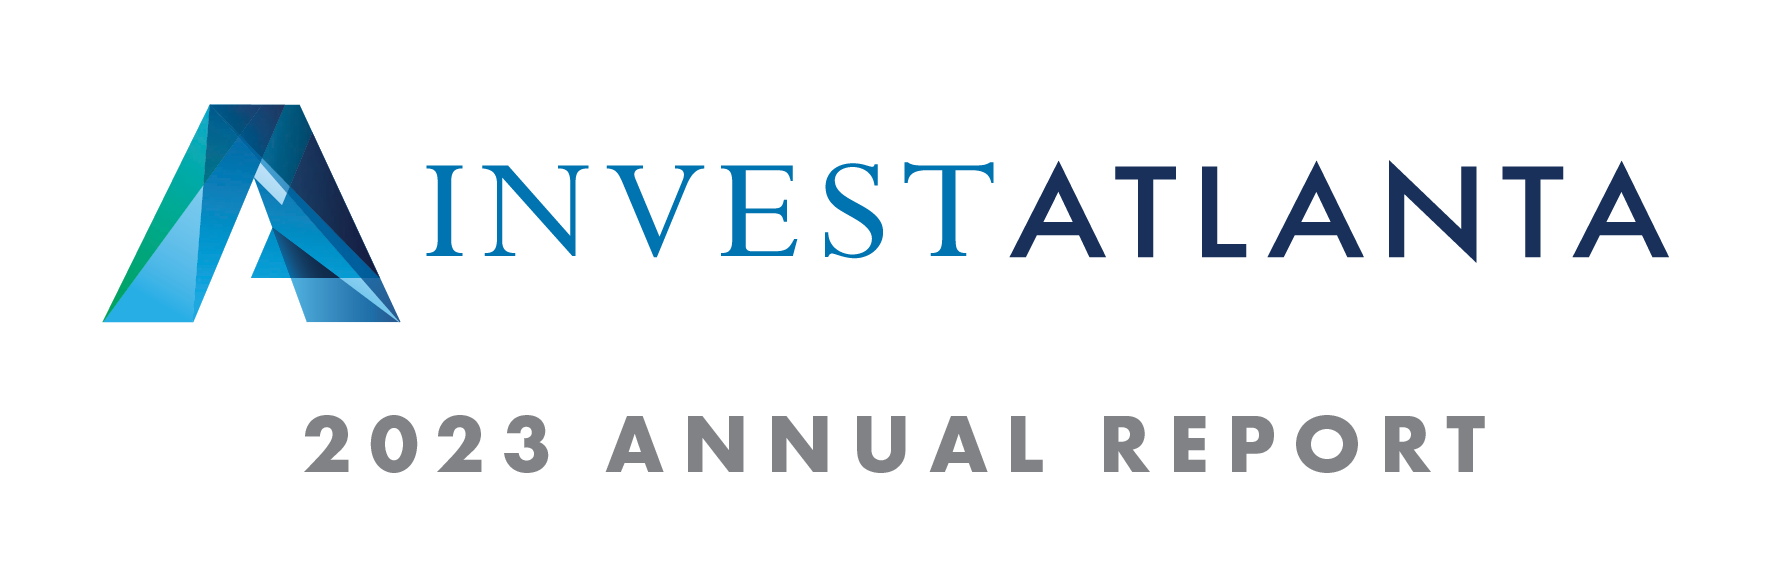 Invest Atlanta 2023 Annual Report